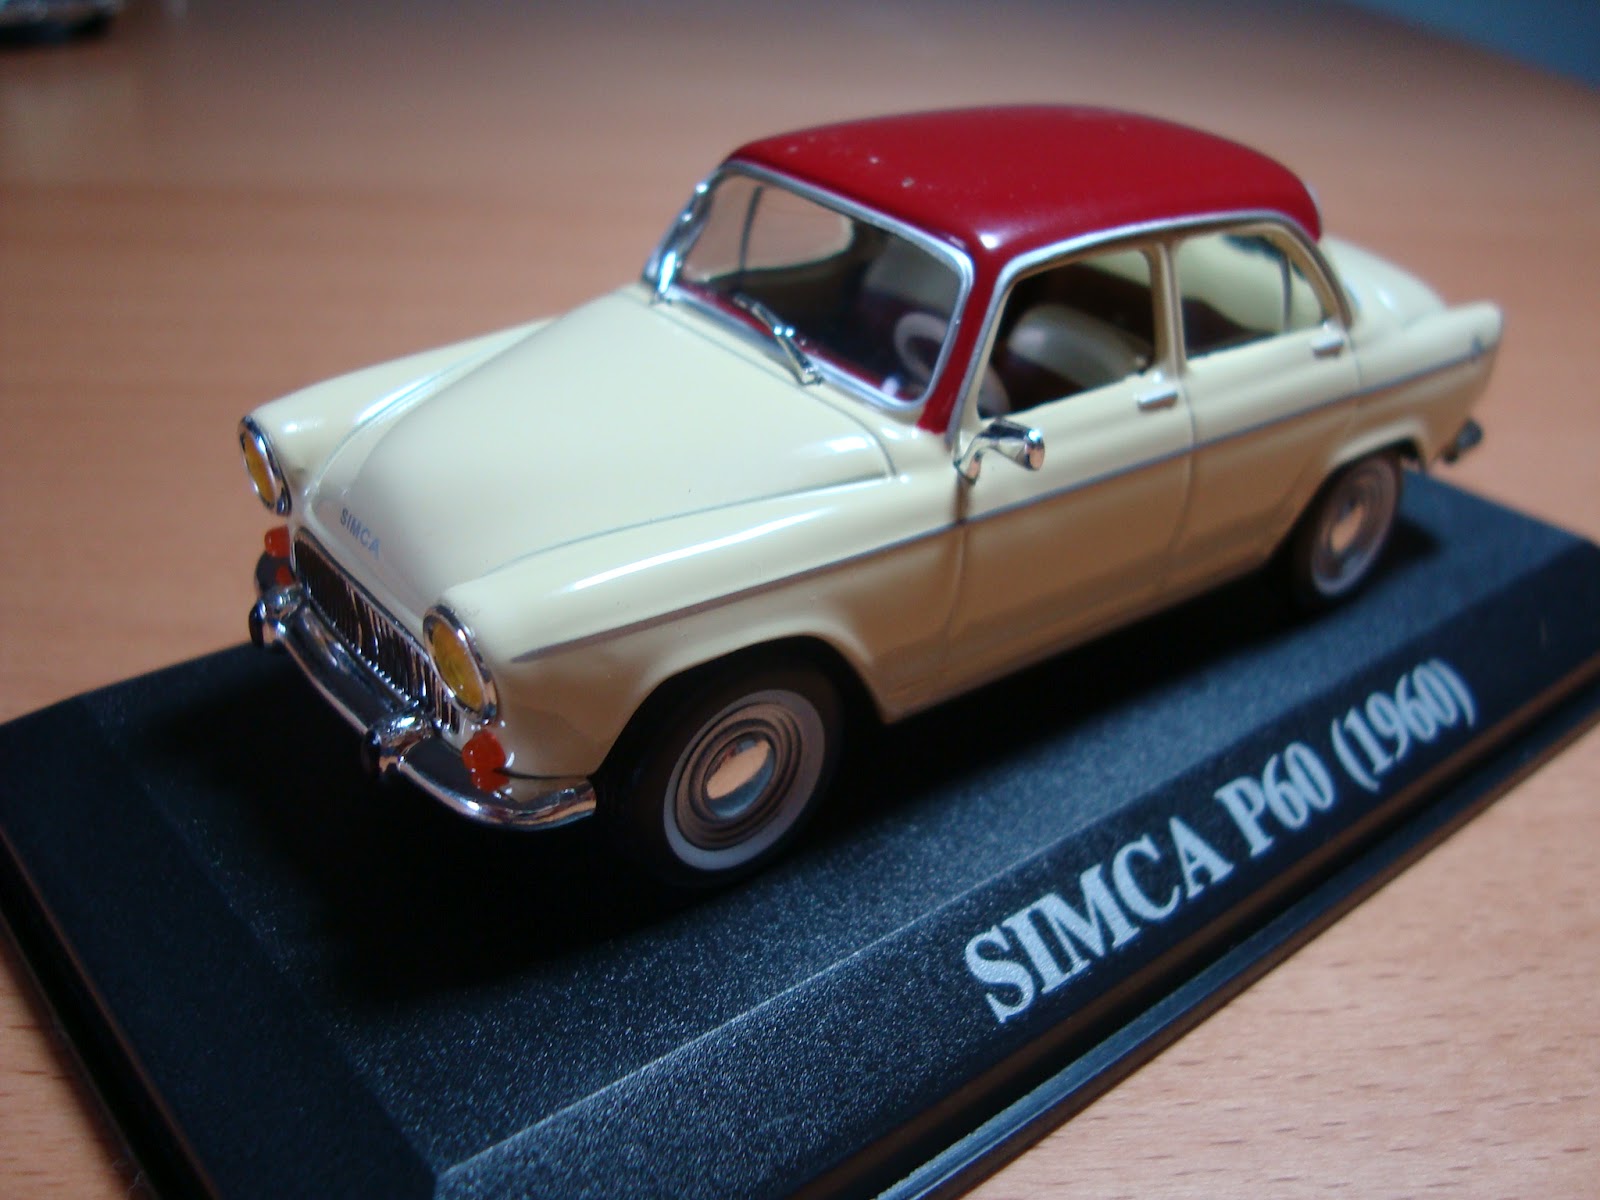 Oscar's Classic Model Cars Collection: 1960 SIMCAP60 Aronde